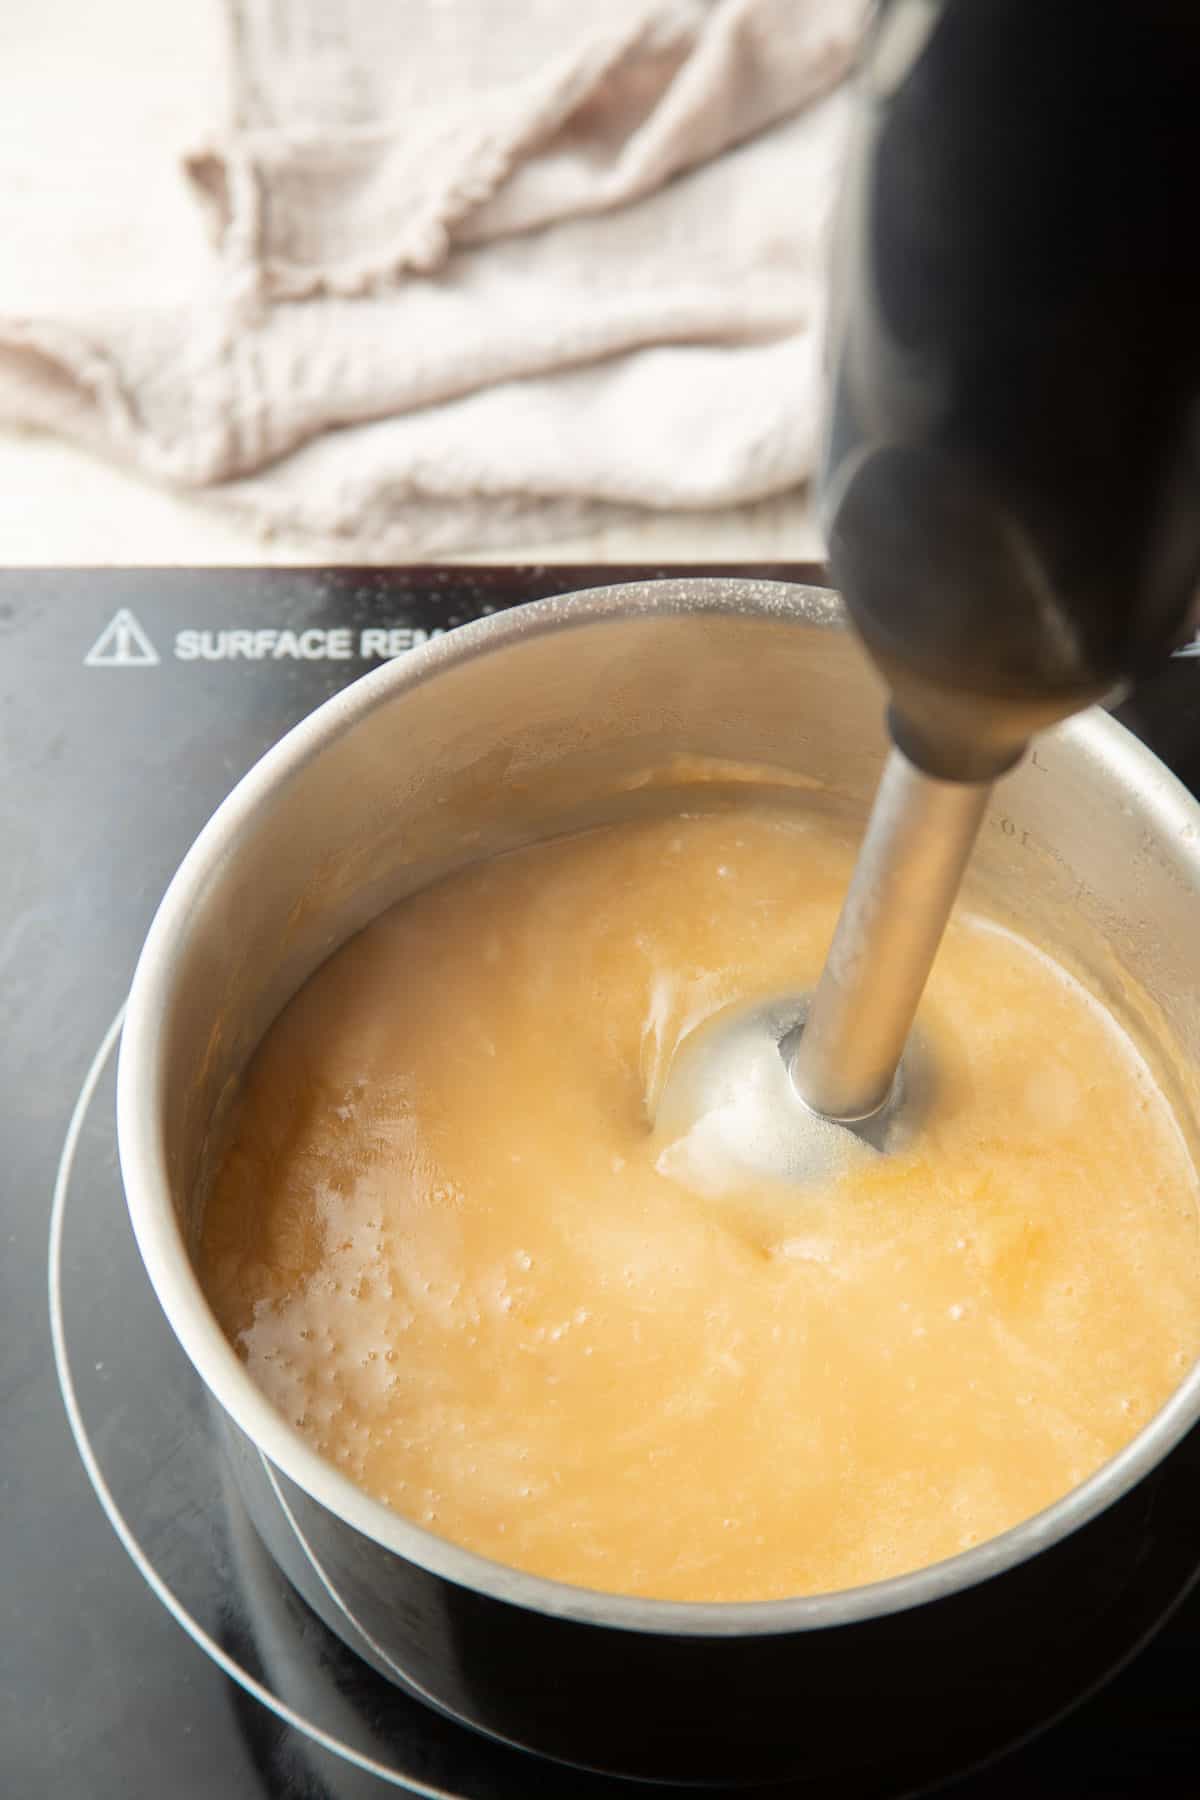 Immersion blender blending gravy in a saucepan.